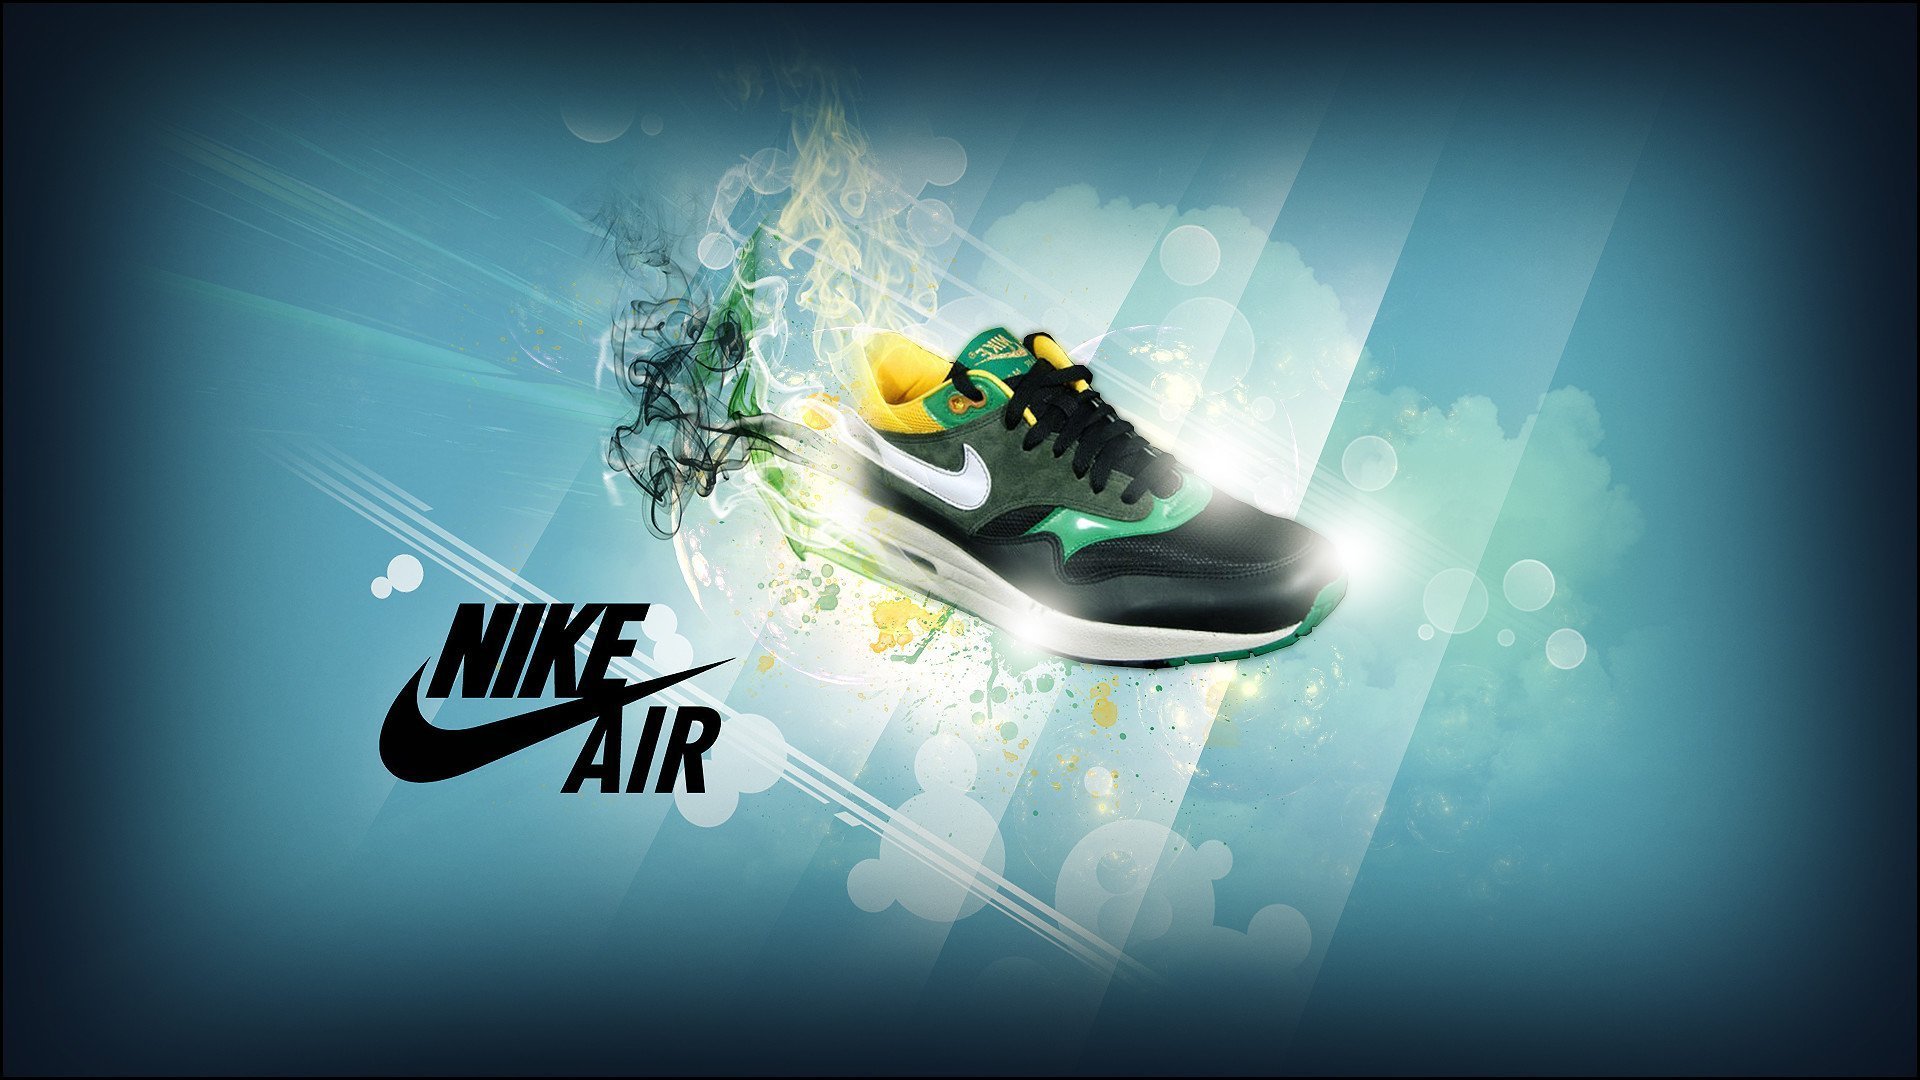 Обои на айфон найк. Nike 1080 Air. Найк с АИР Макс лого. Найк 4.